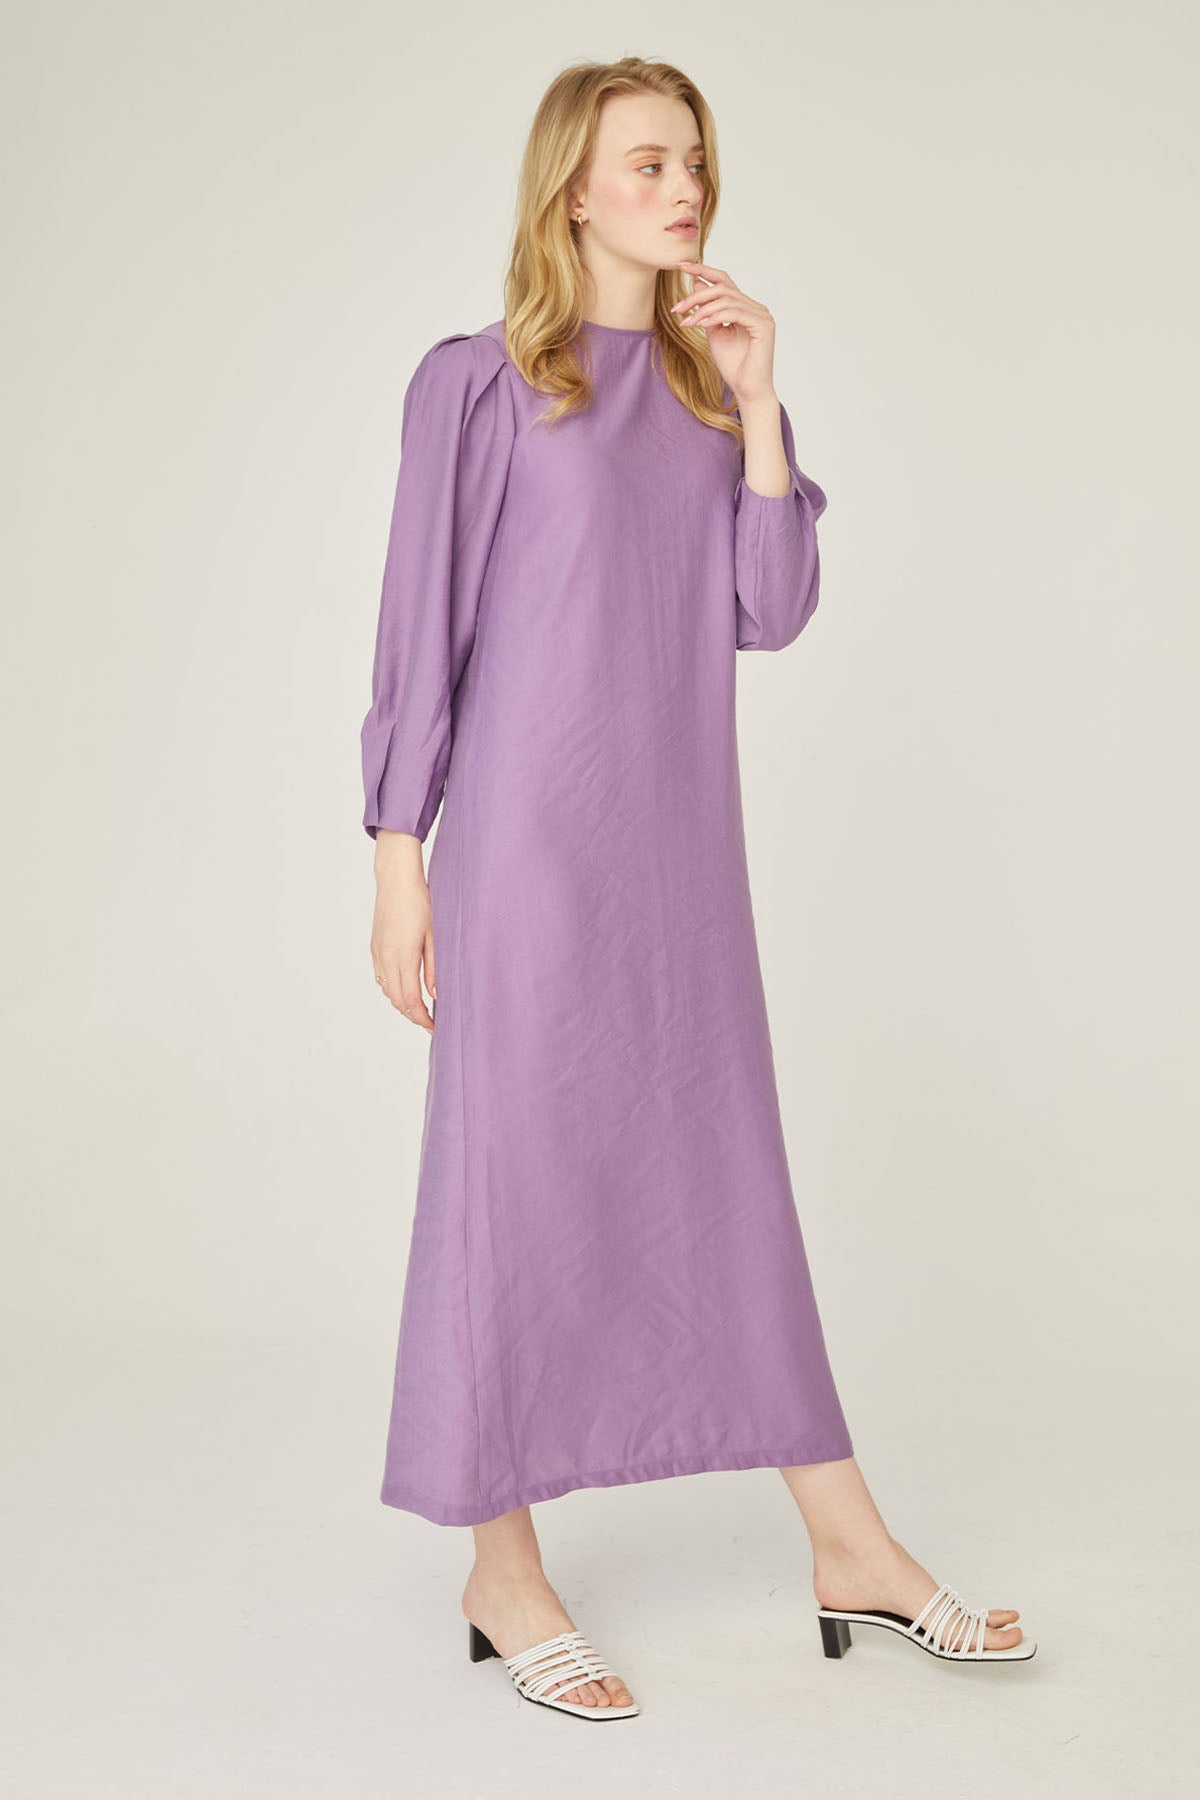 Leinen Kleid-Violett | Hochwertiger Leinen🌿